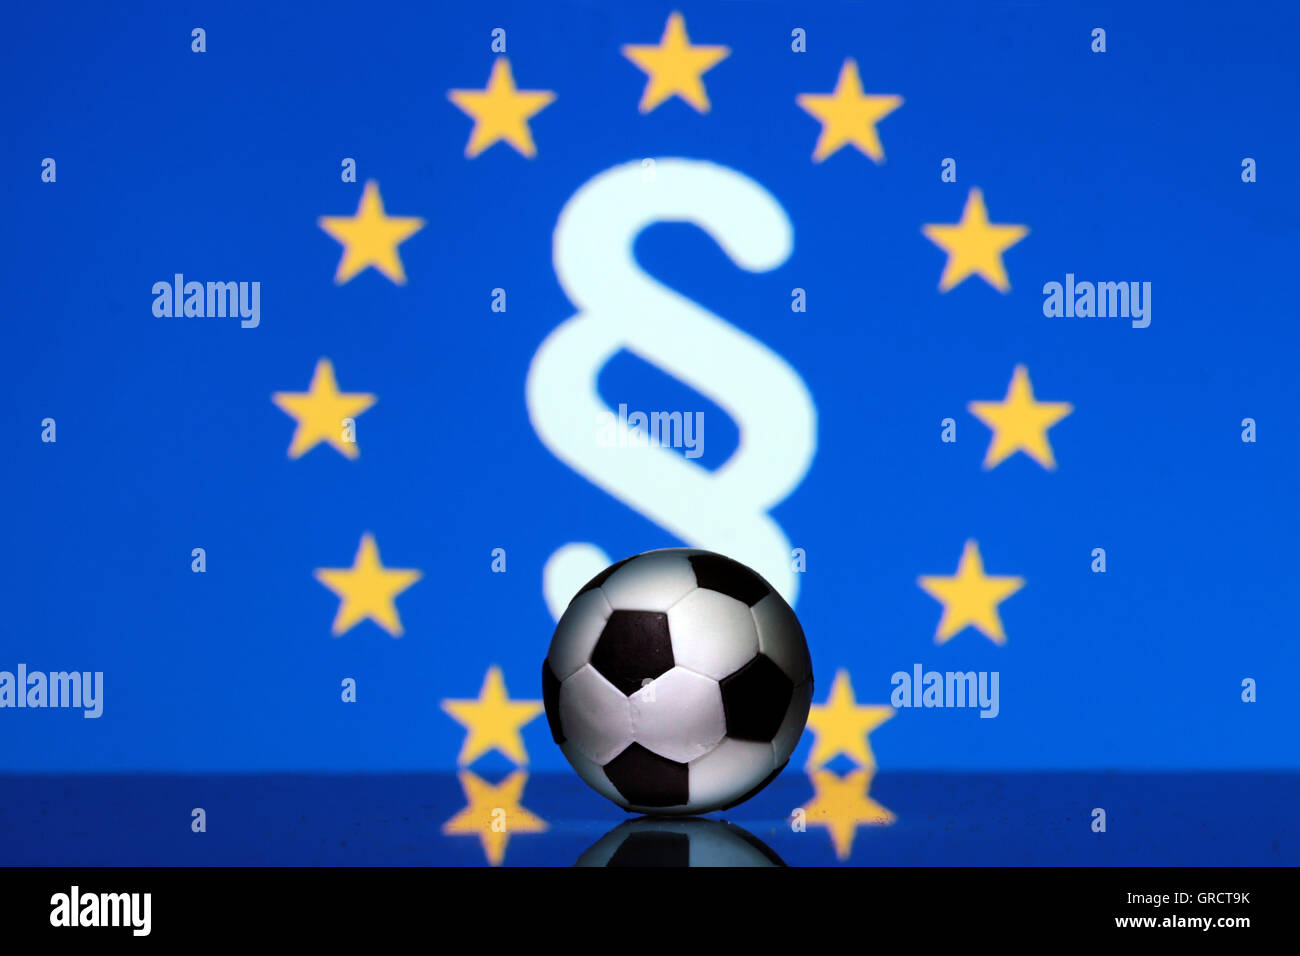 Fußball mit EU-Flagge und Absatz-Zeichen Stockfoto